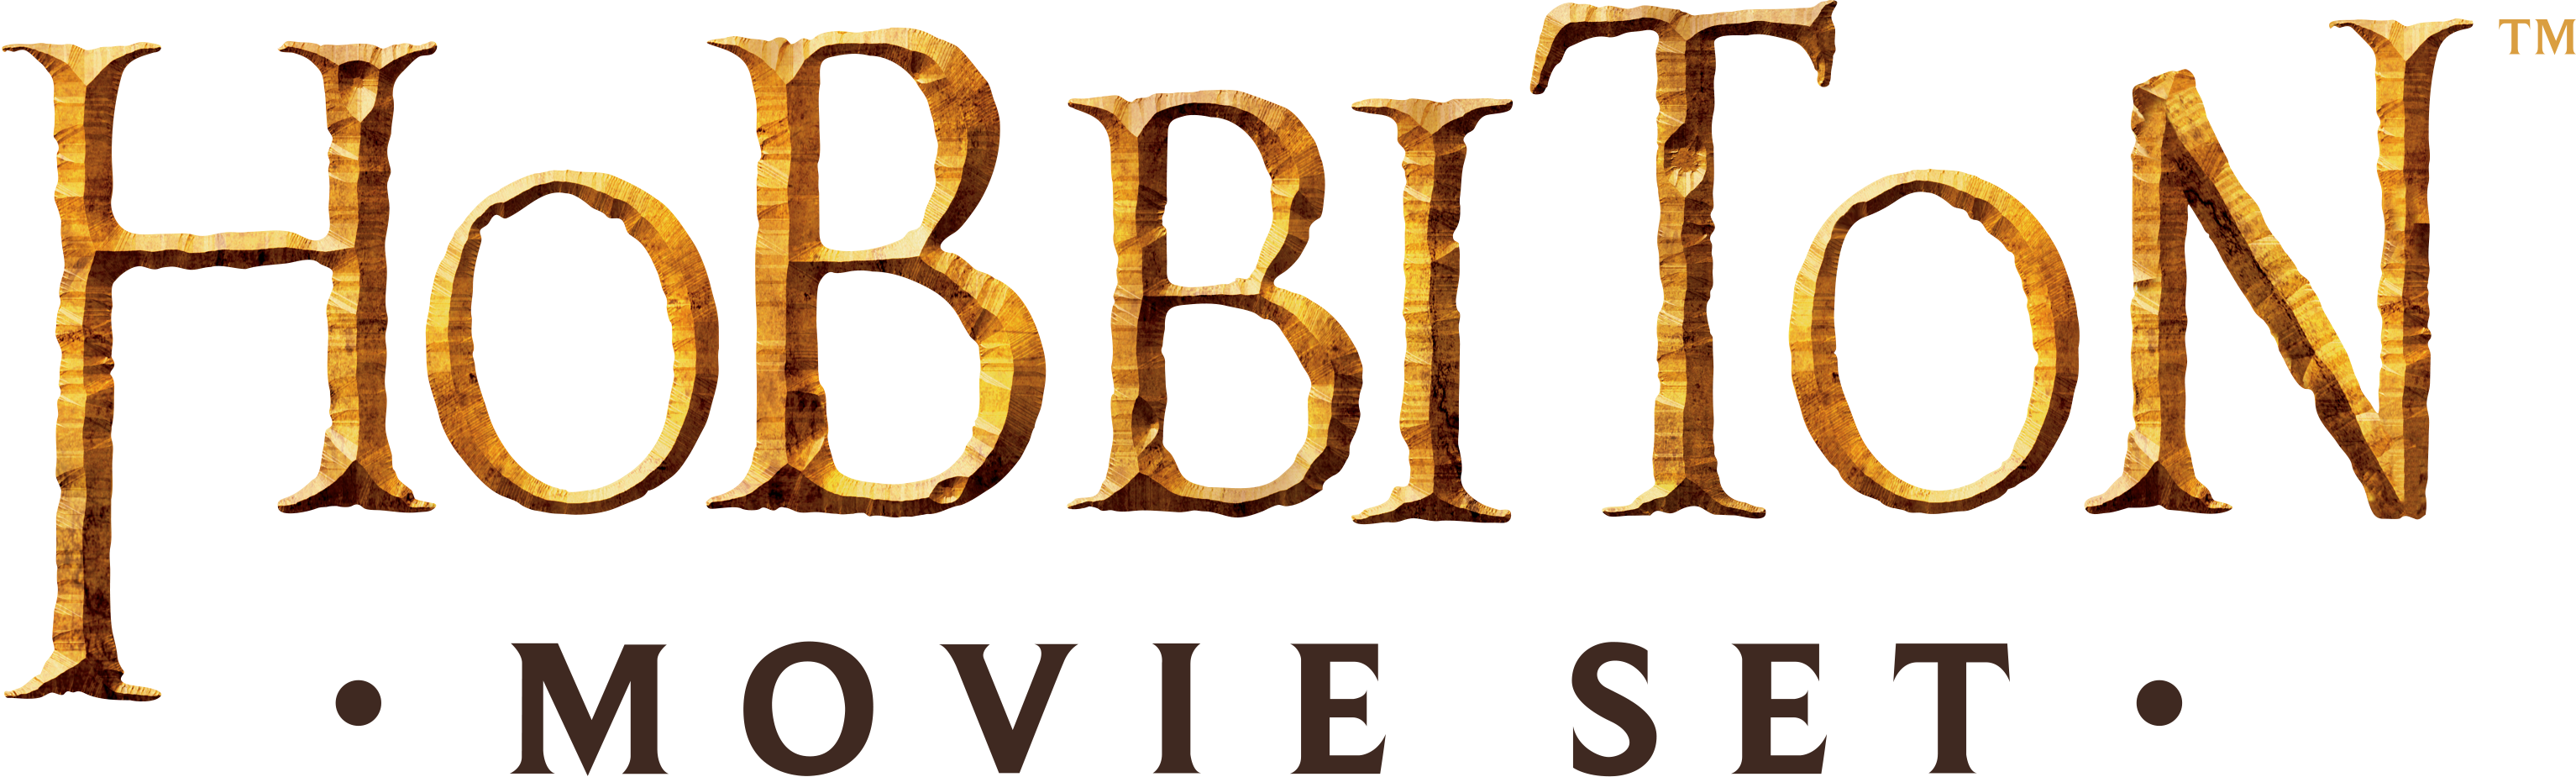 Hobbiton-logo.png